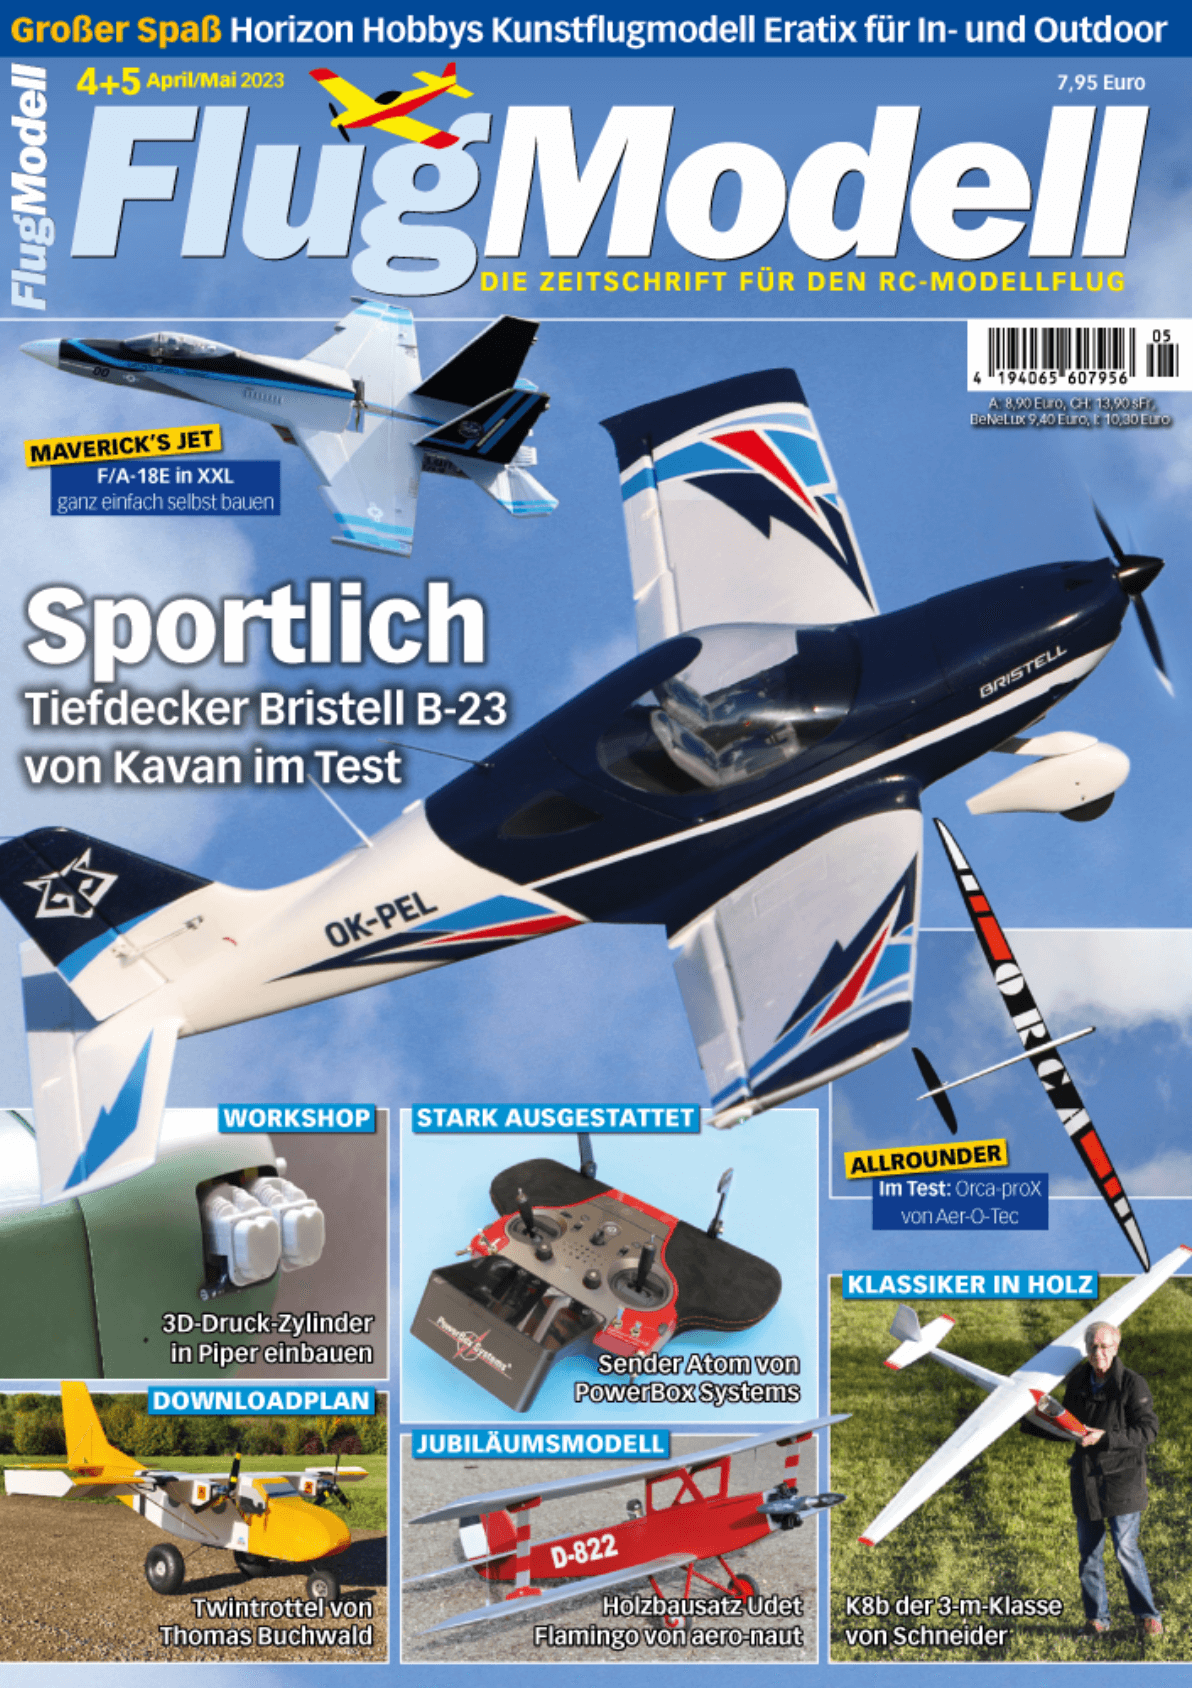 Bild Cover der Zeitschrift Flugmodell